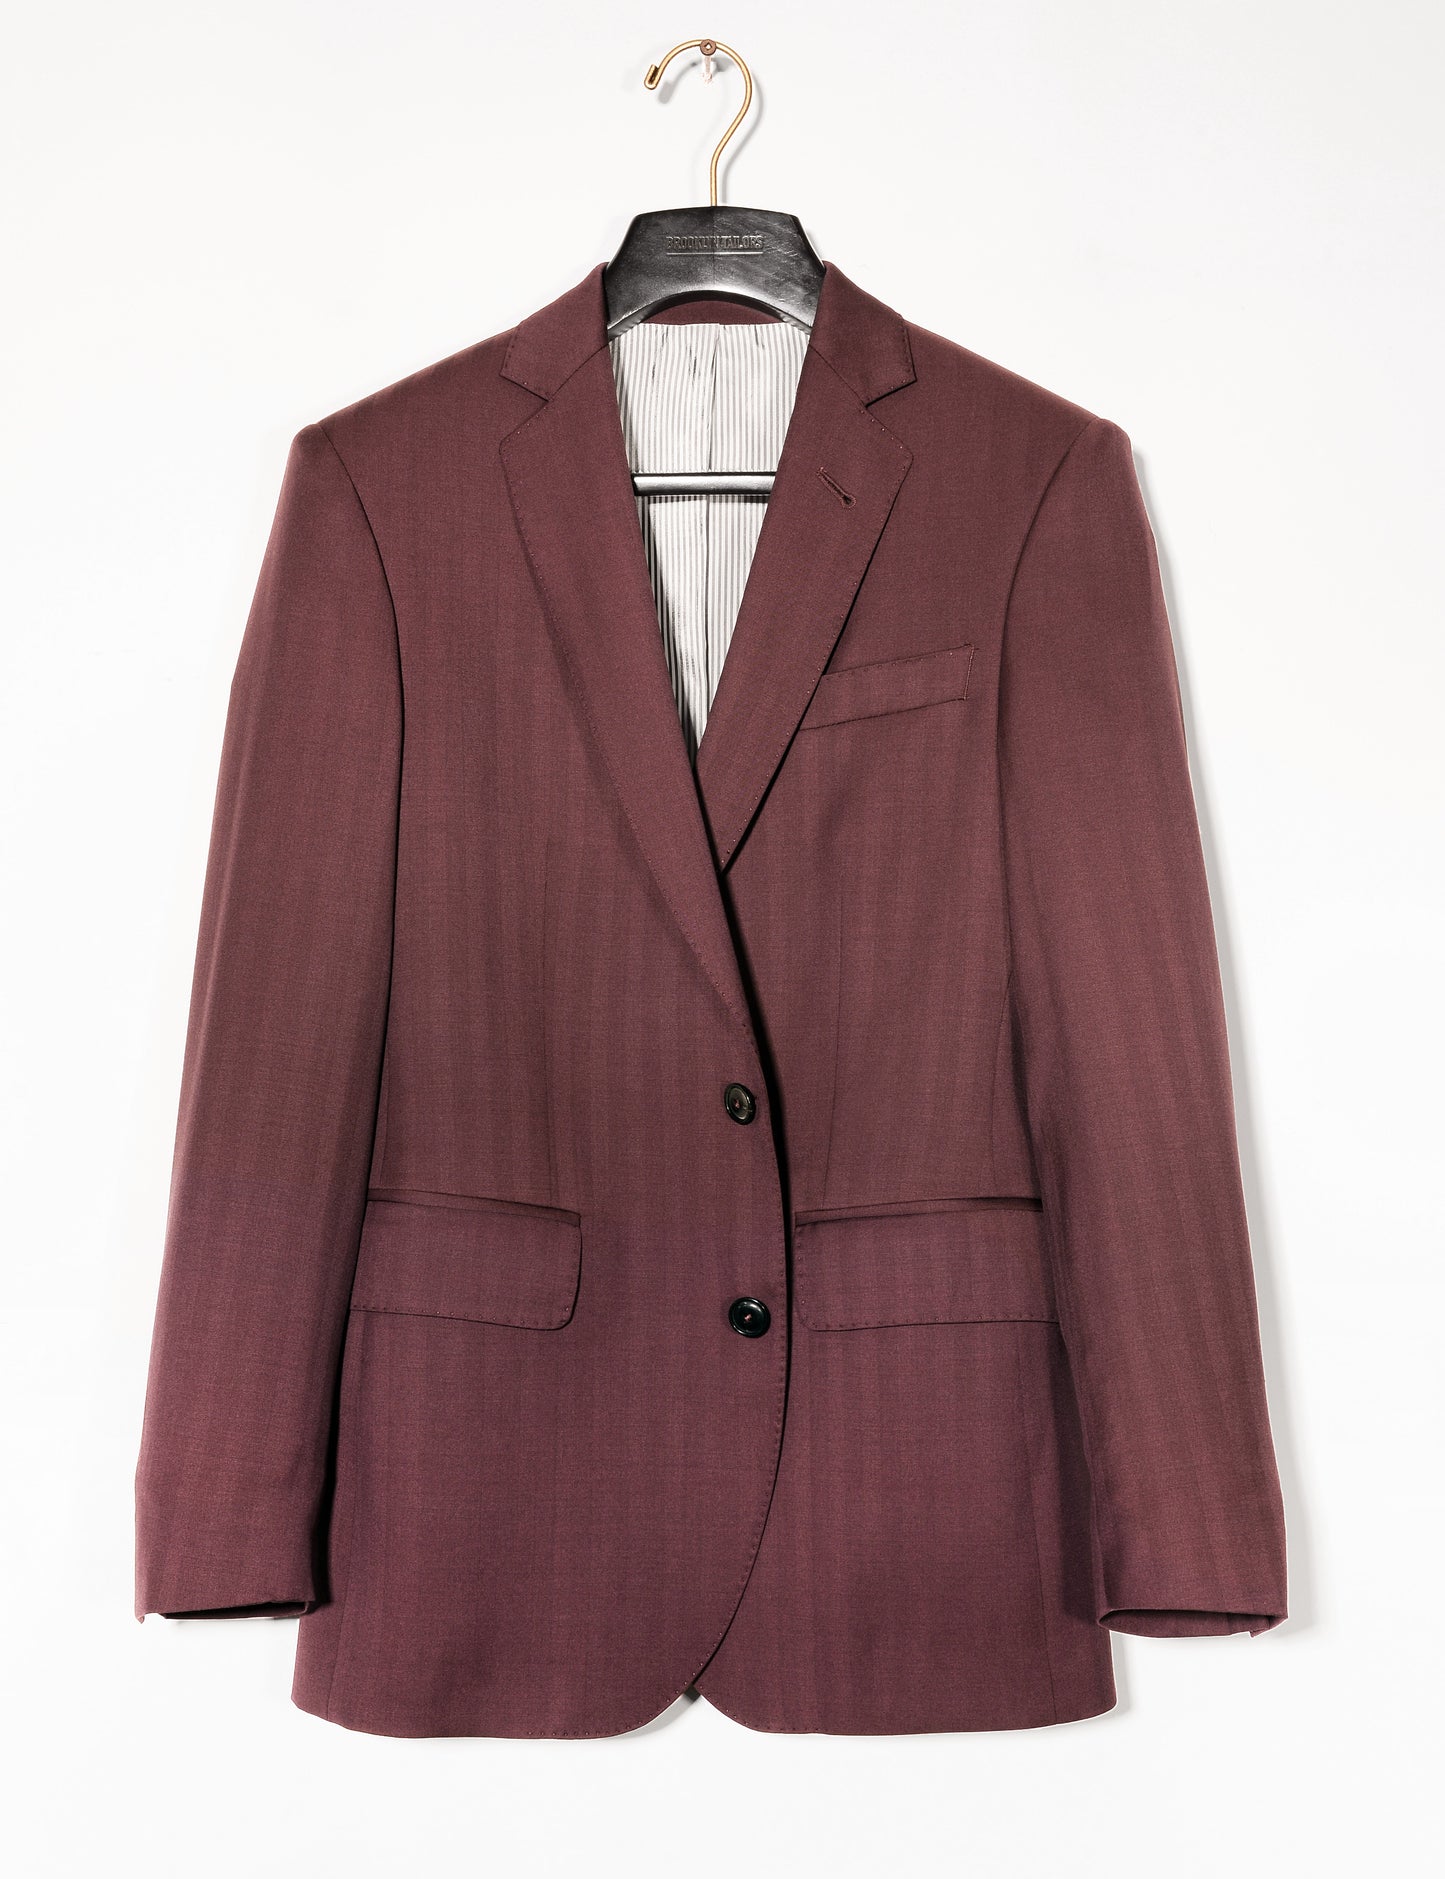 BKT50 Tailored Jacket in Wool Herringbone - Syrah